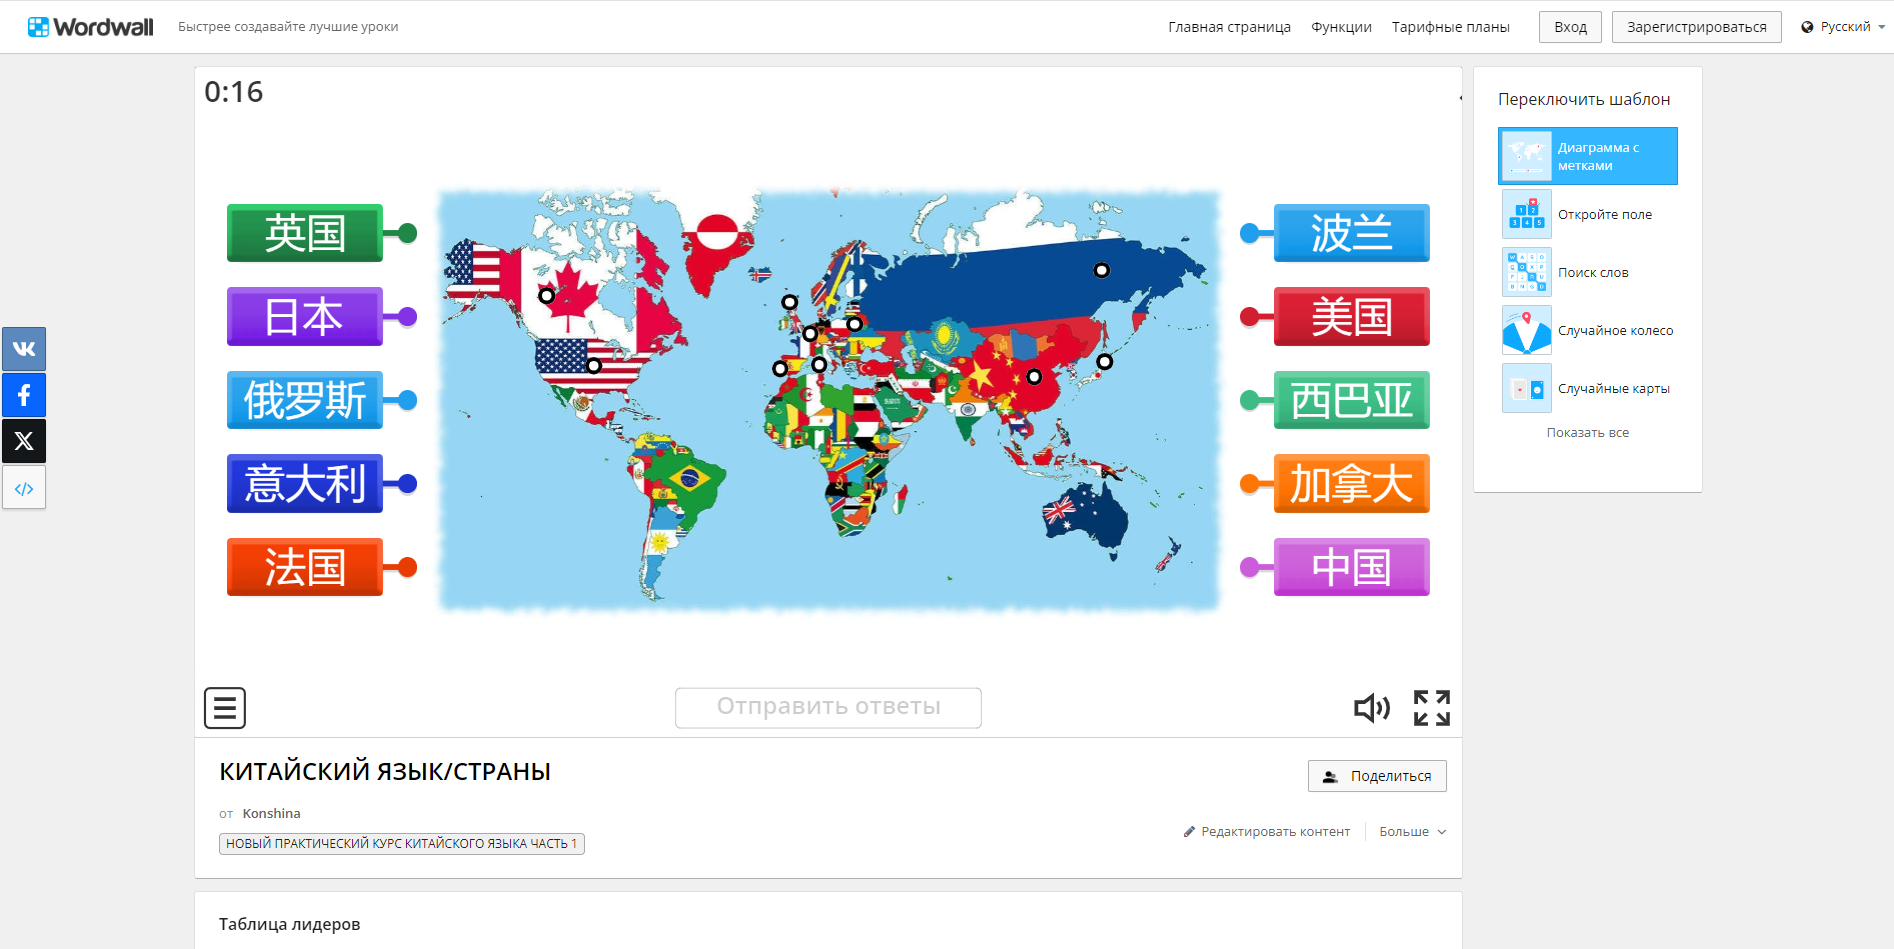 Упражнение на сопоставление названий стран на китайском языке с их географическим положением